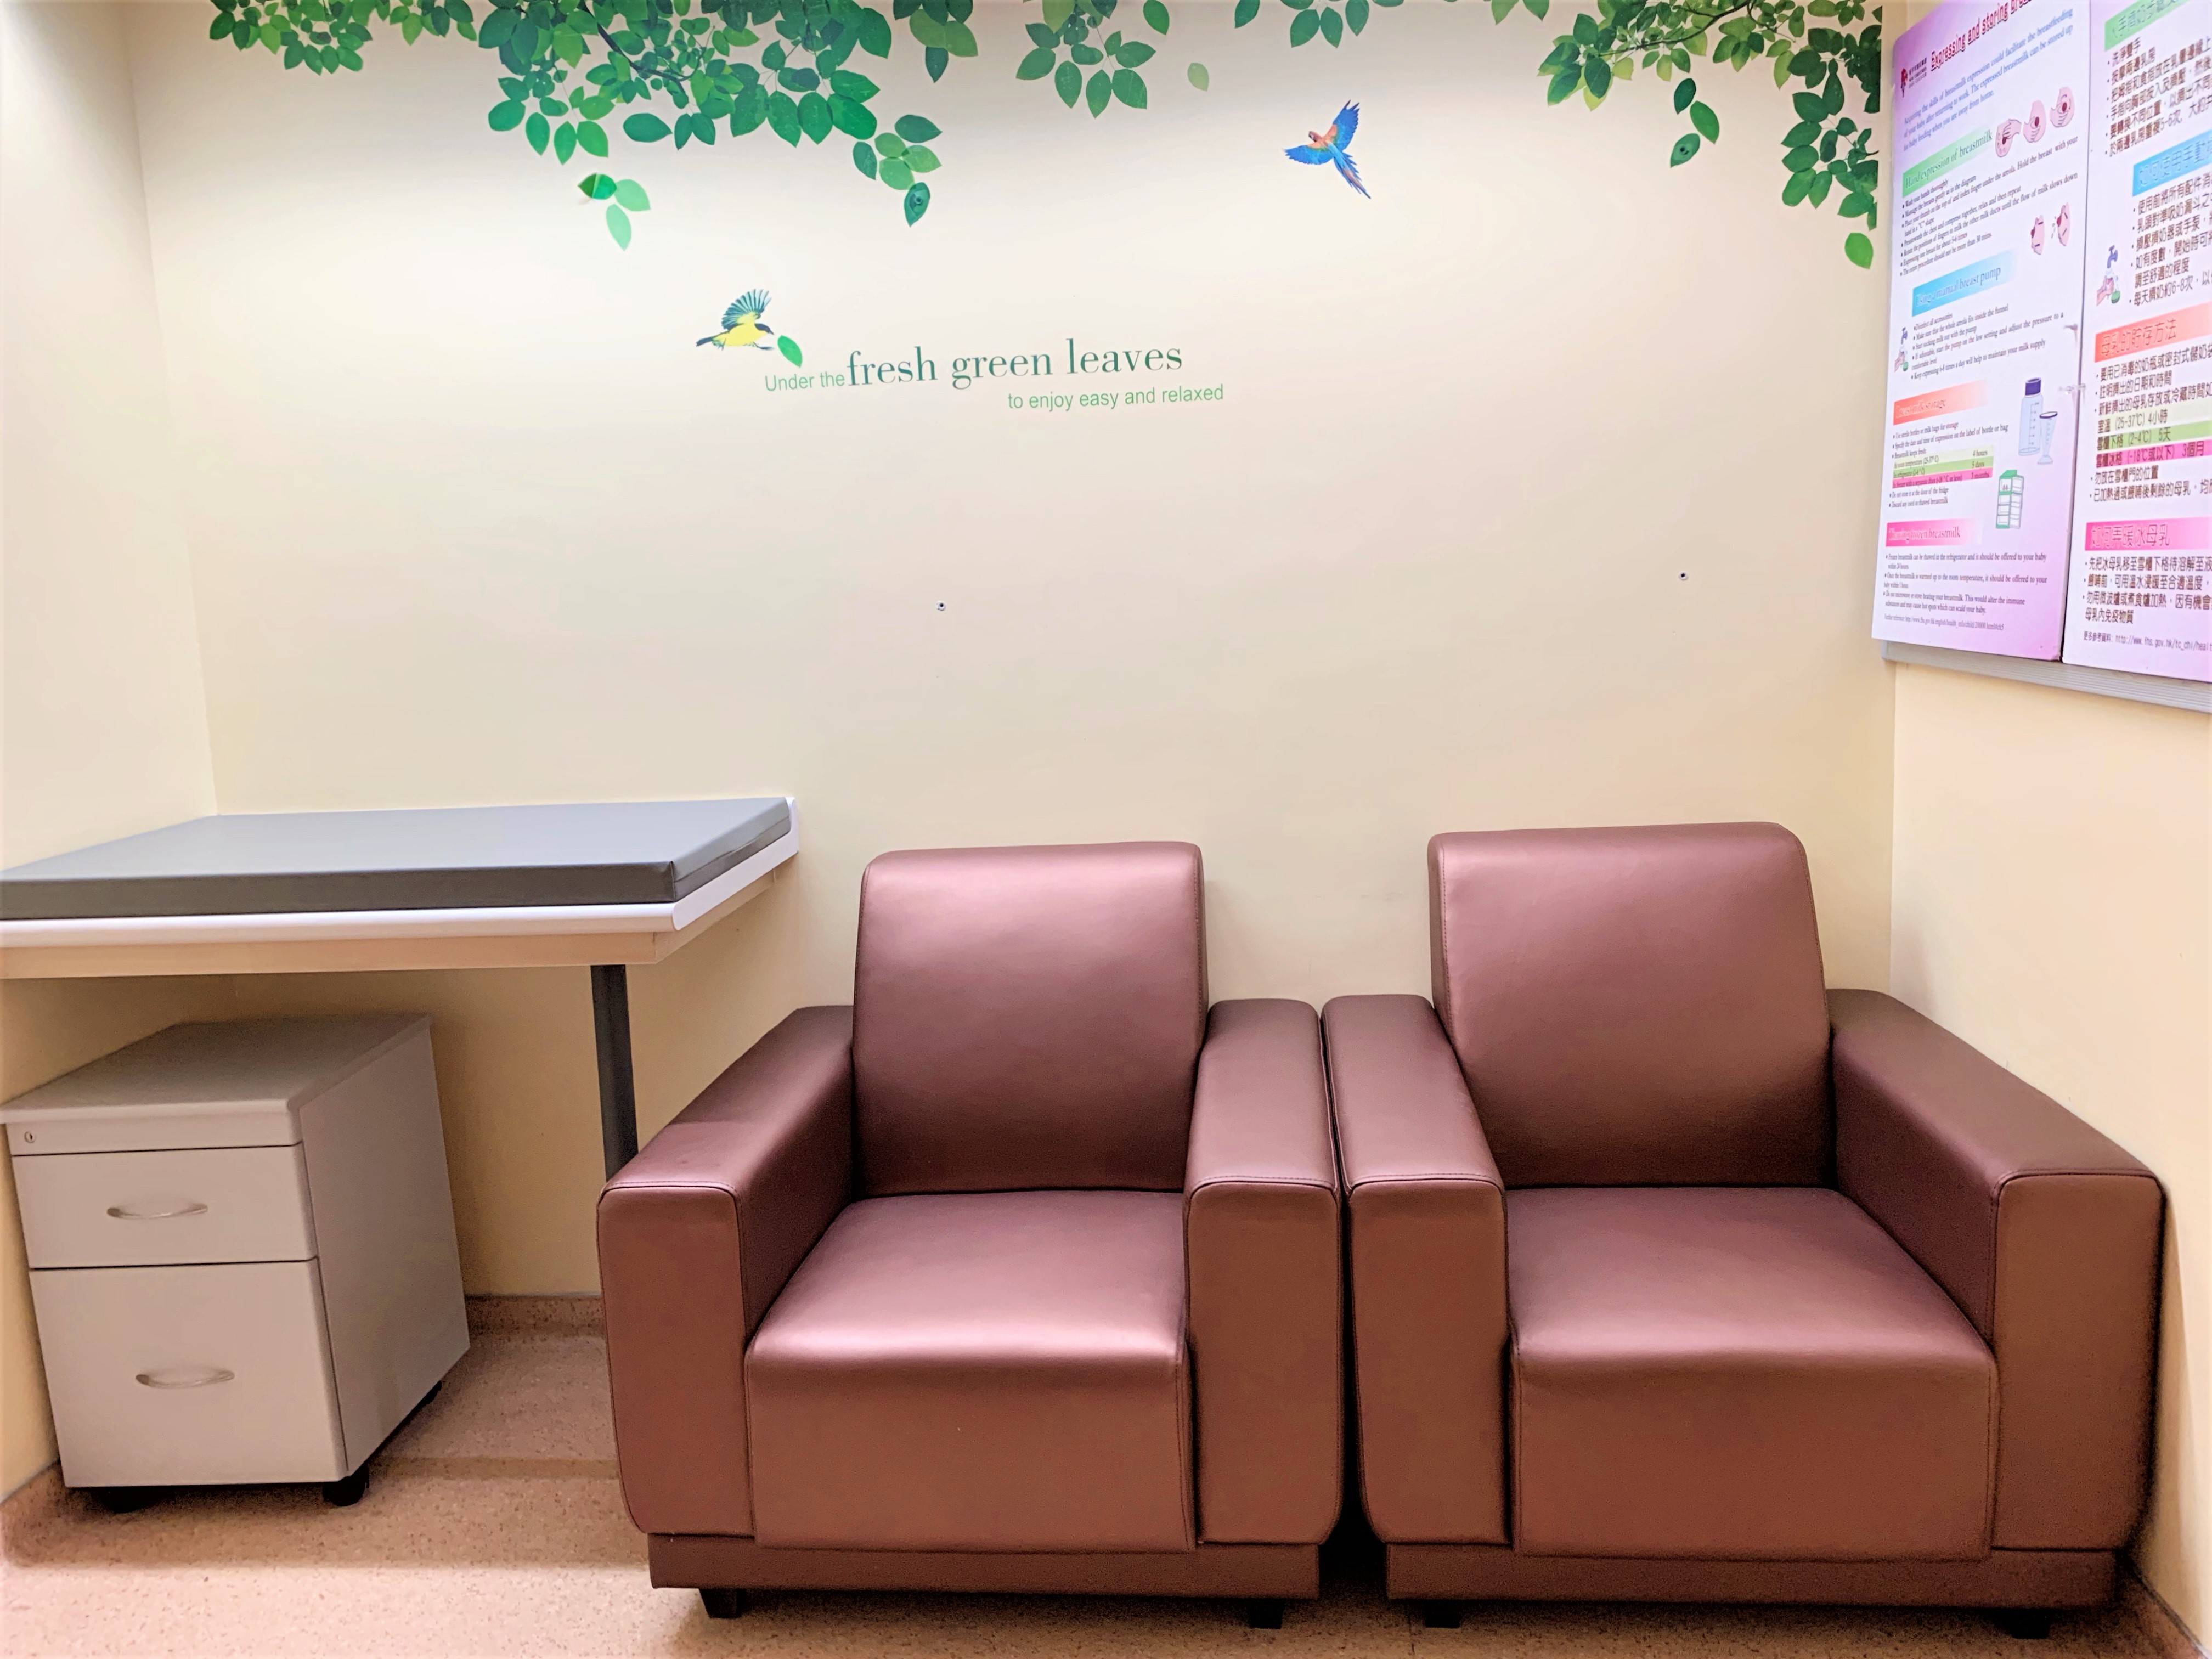 Breastfeeding Room at Lobby, G/F, Main Clinical Block and Trauma Centre